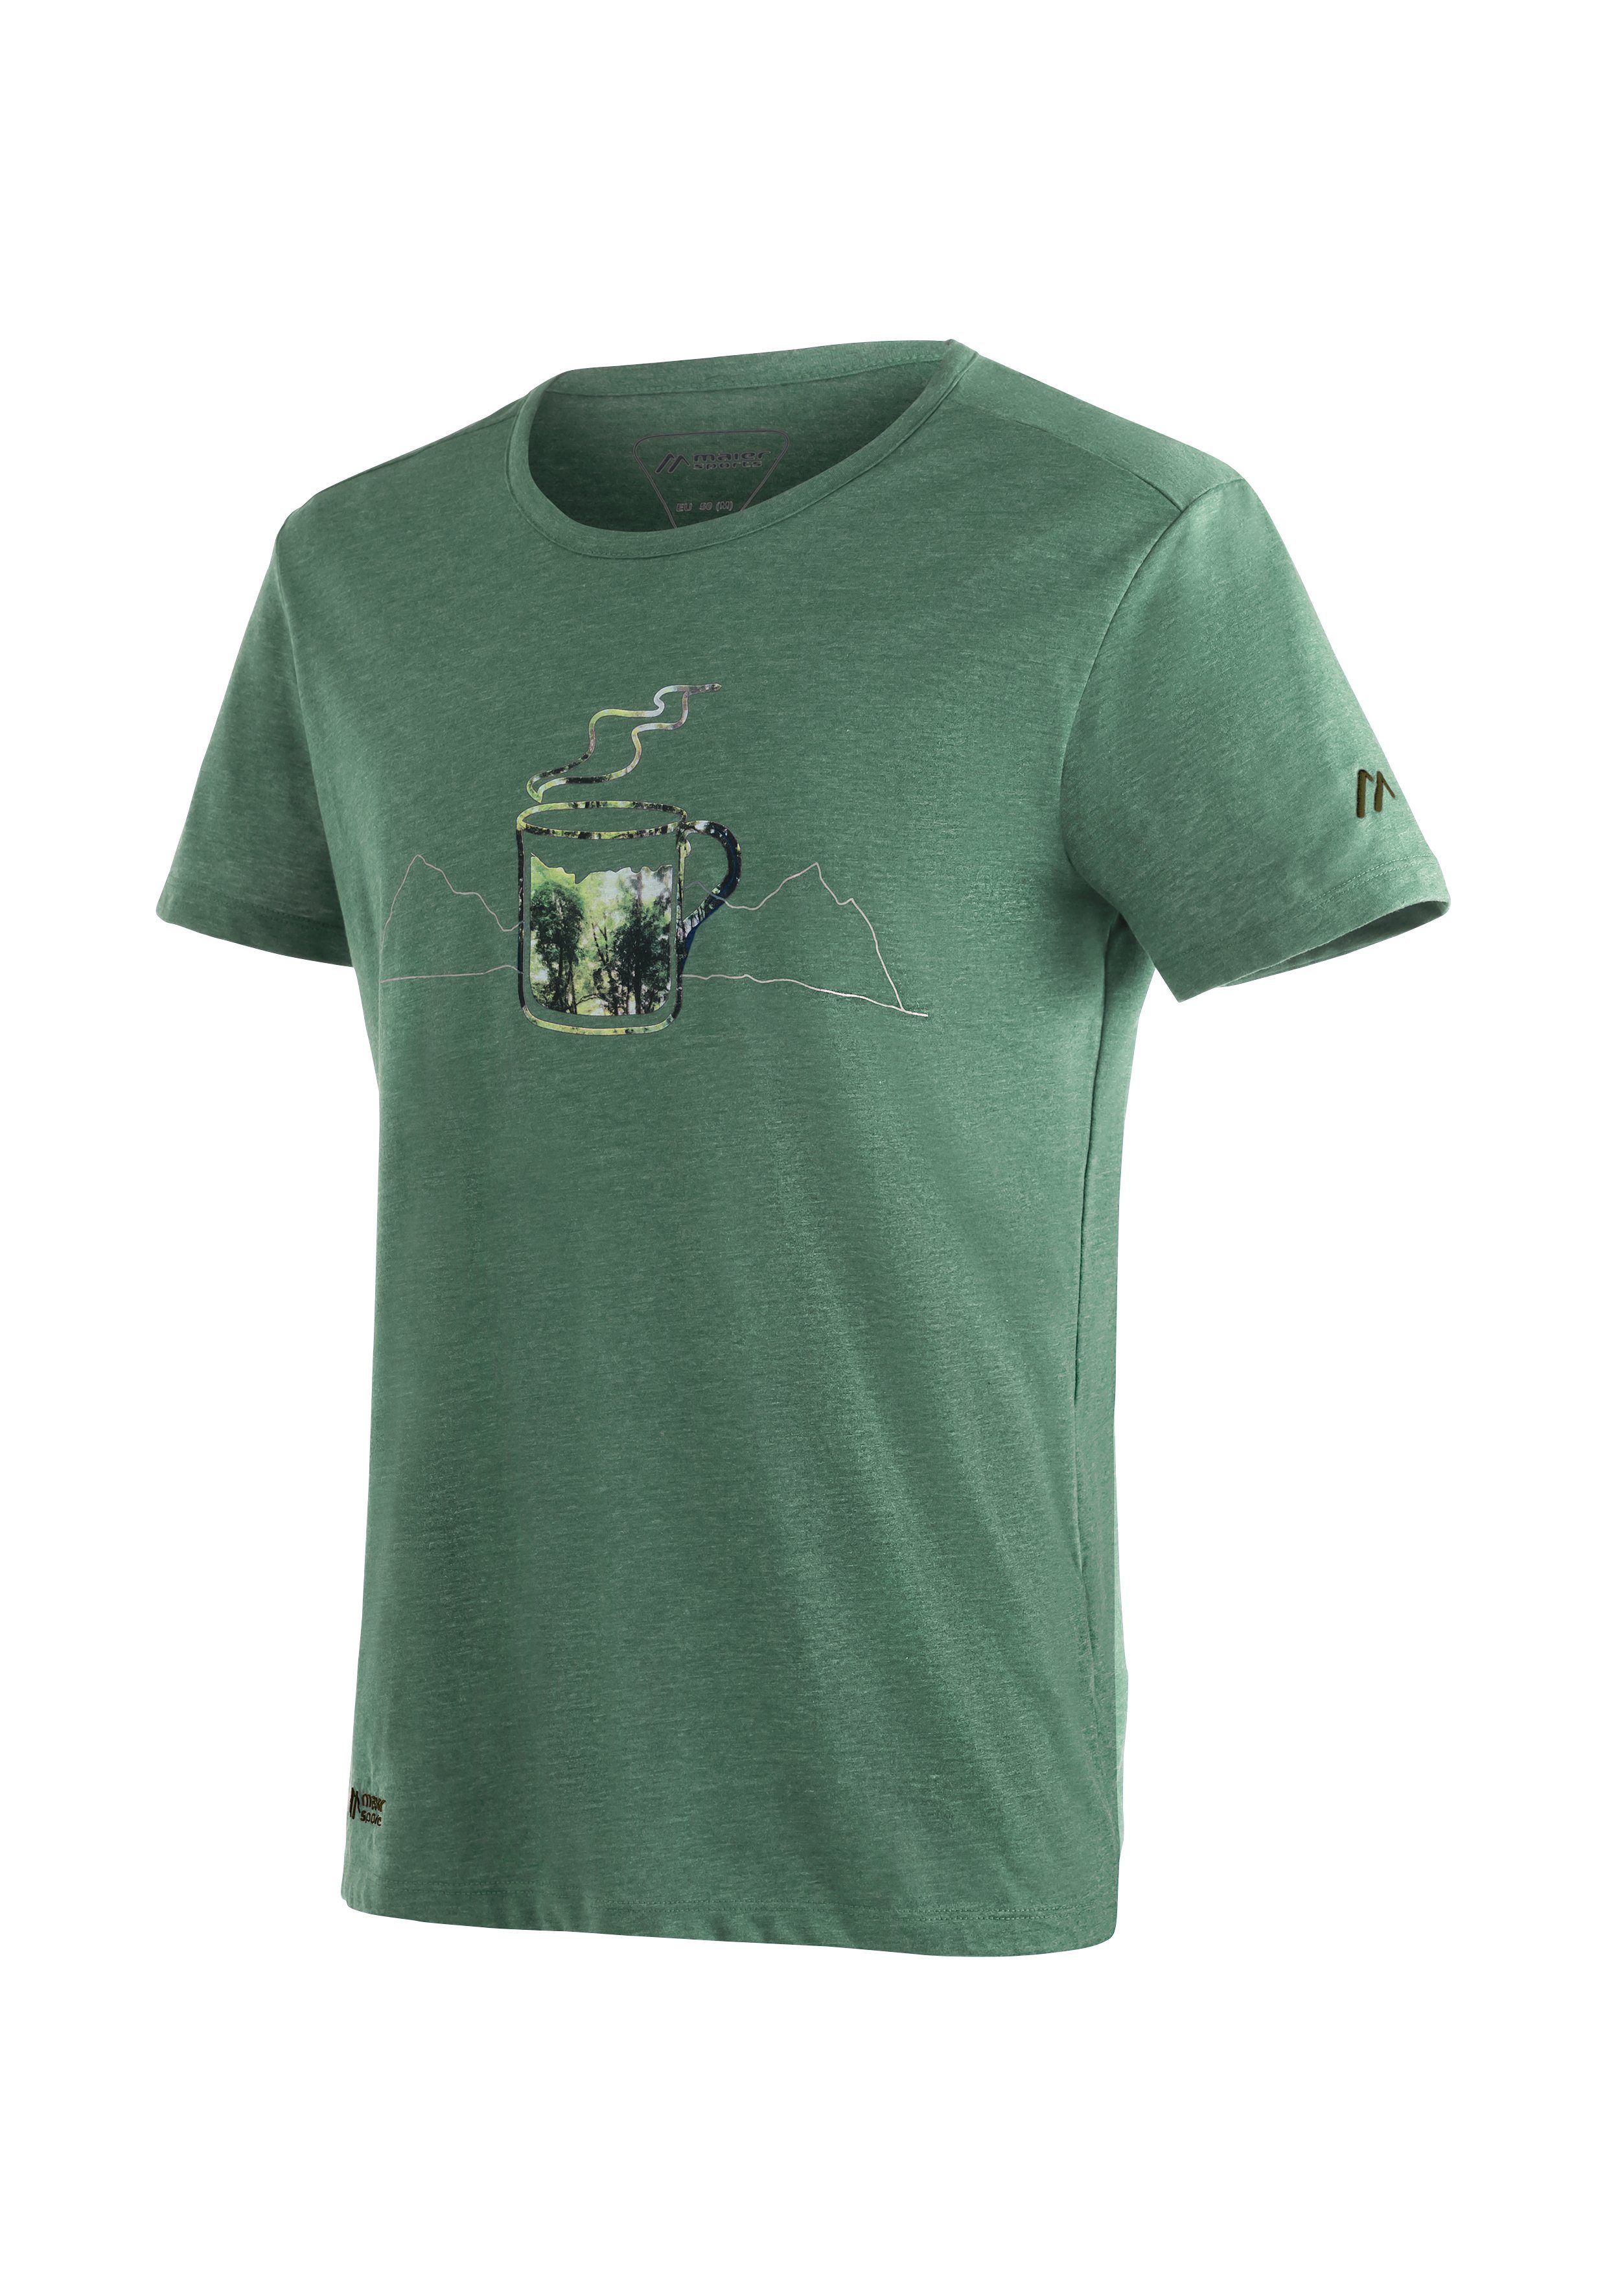 Melange-Optik in M Maier Funktionsshirt Coffee Break ansprechender Sports T-Shirt hellgrün Vielseitiges